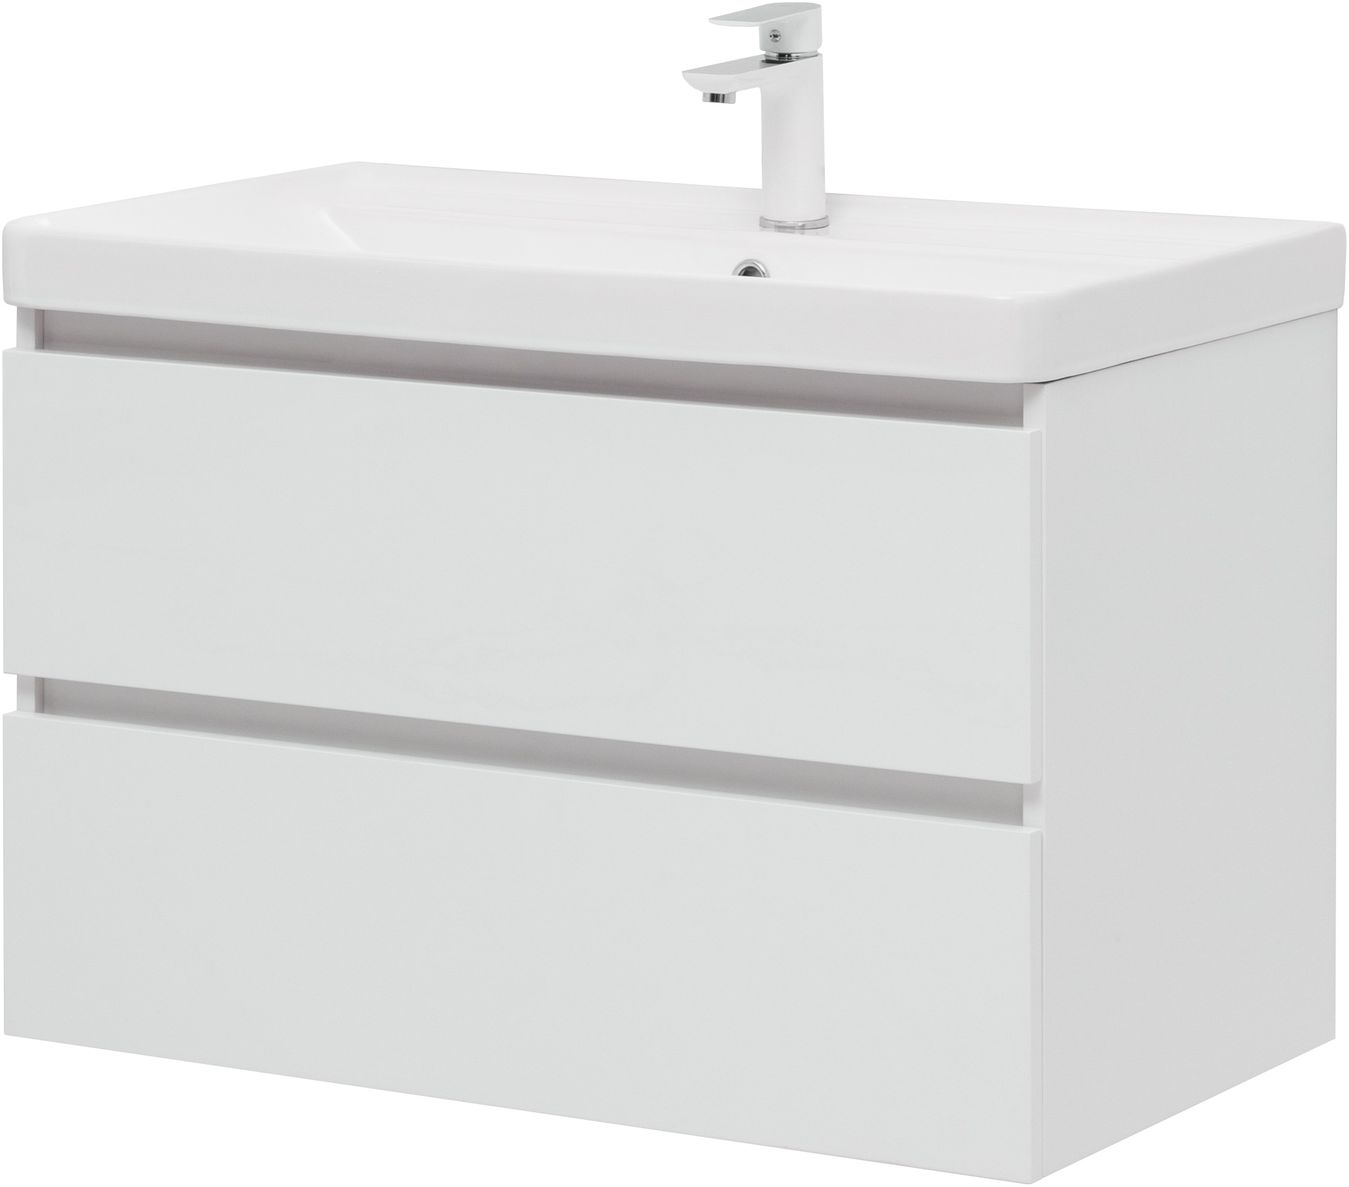 Мебель для ванной Aquanet Вега 80 см белая (2 ящика), цвет белый 308334 Вега 80 см белая (2 ящика) - фото 6